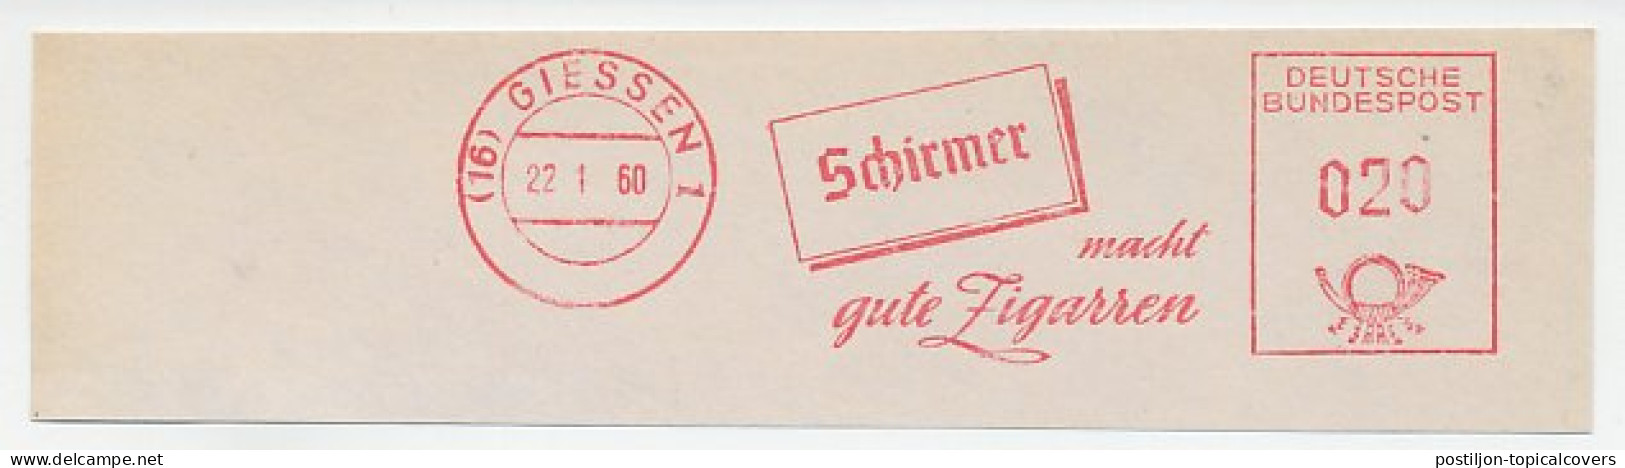 Meter Cut Germany 1960 Cigar - Schirmer - Tabaco